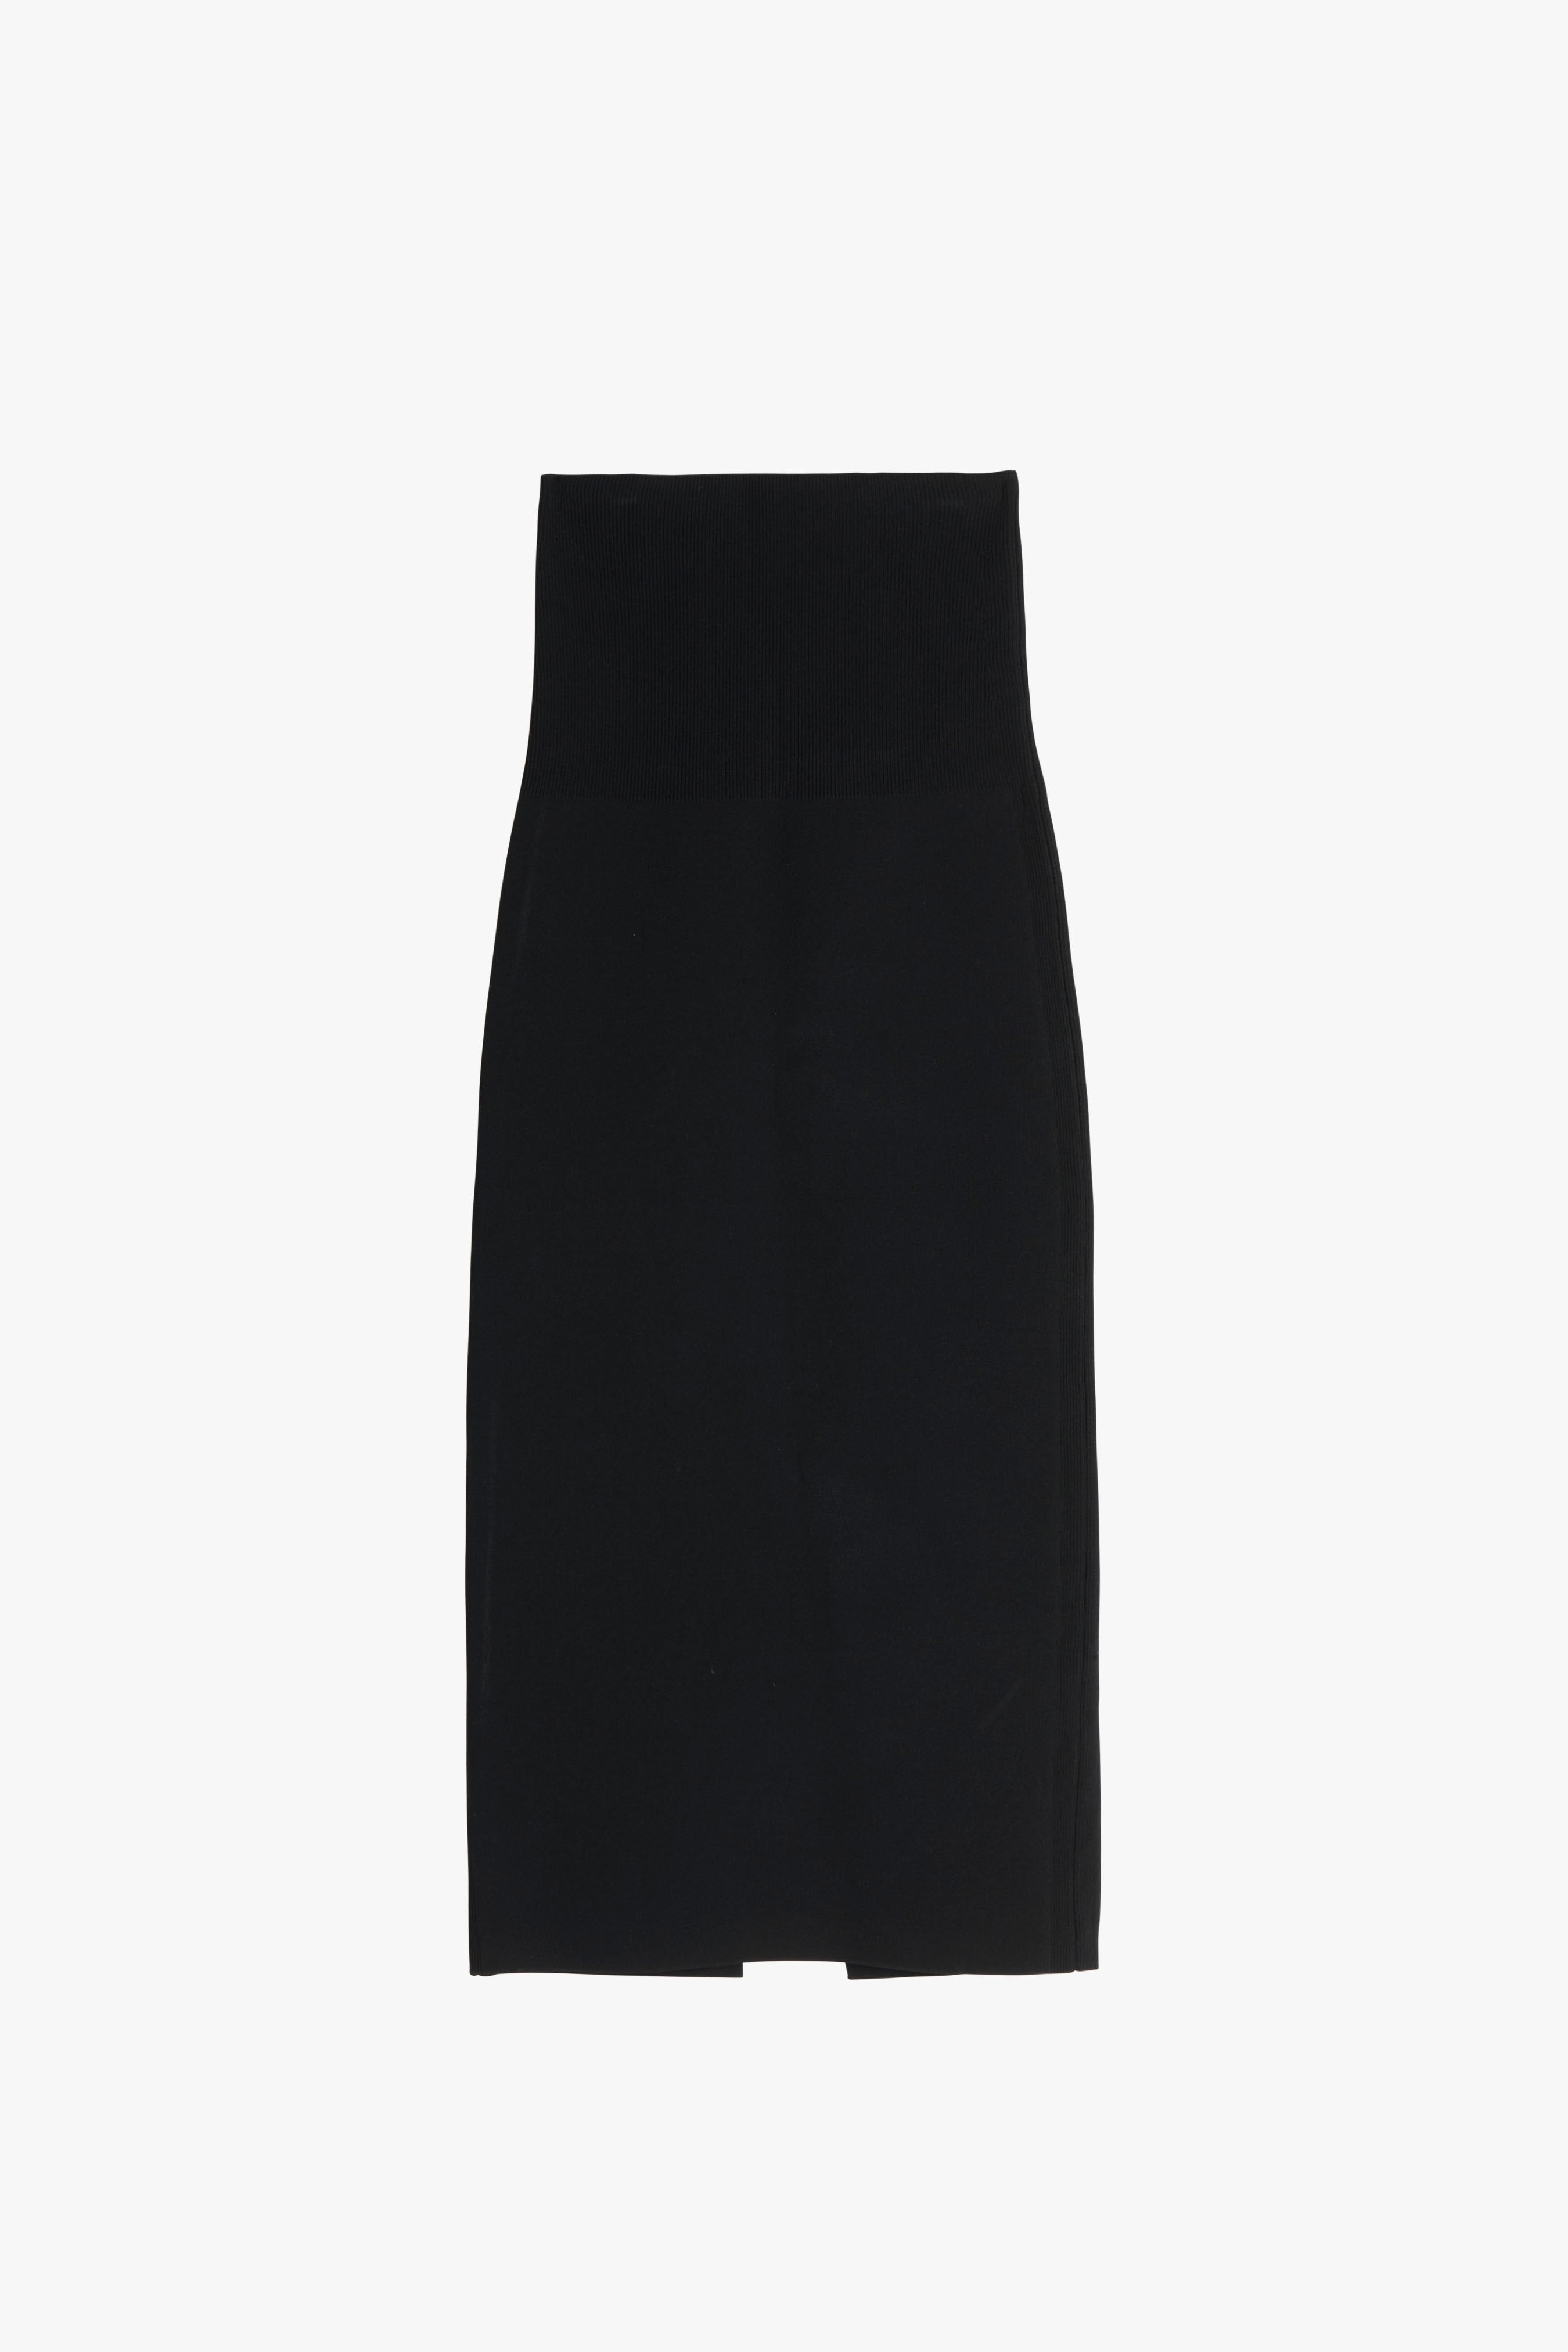 VB Body Midi Skirt in Black - 2